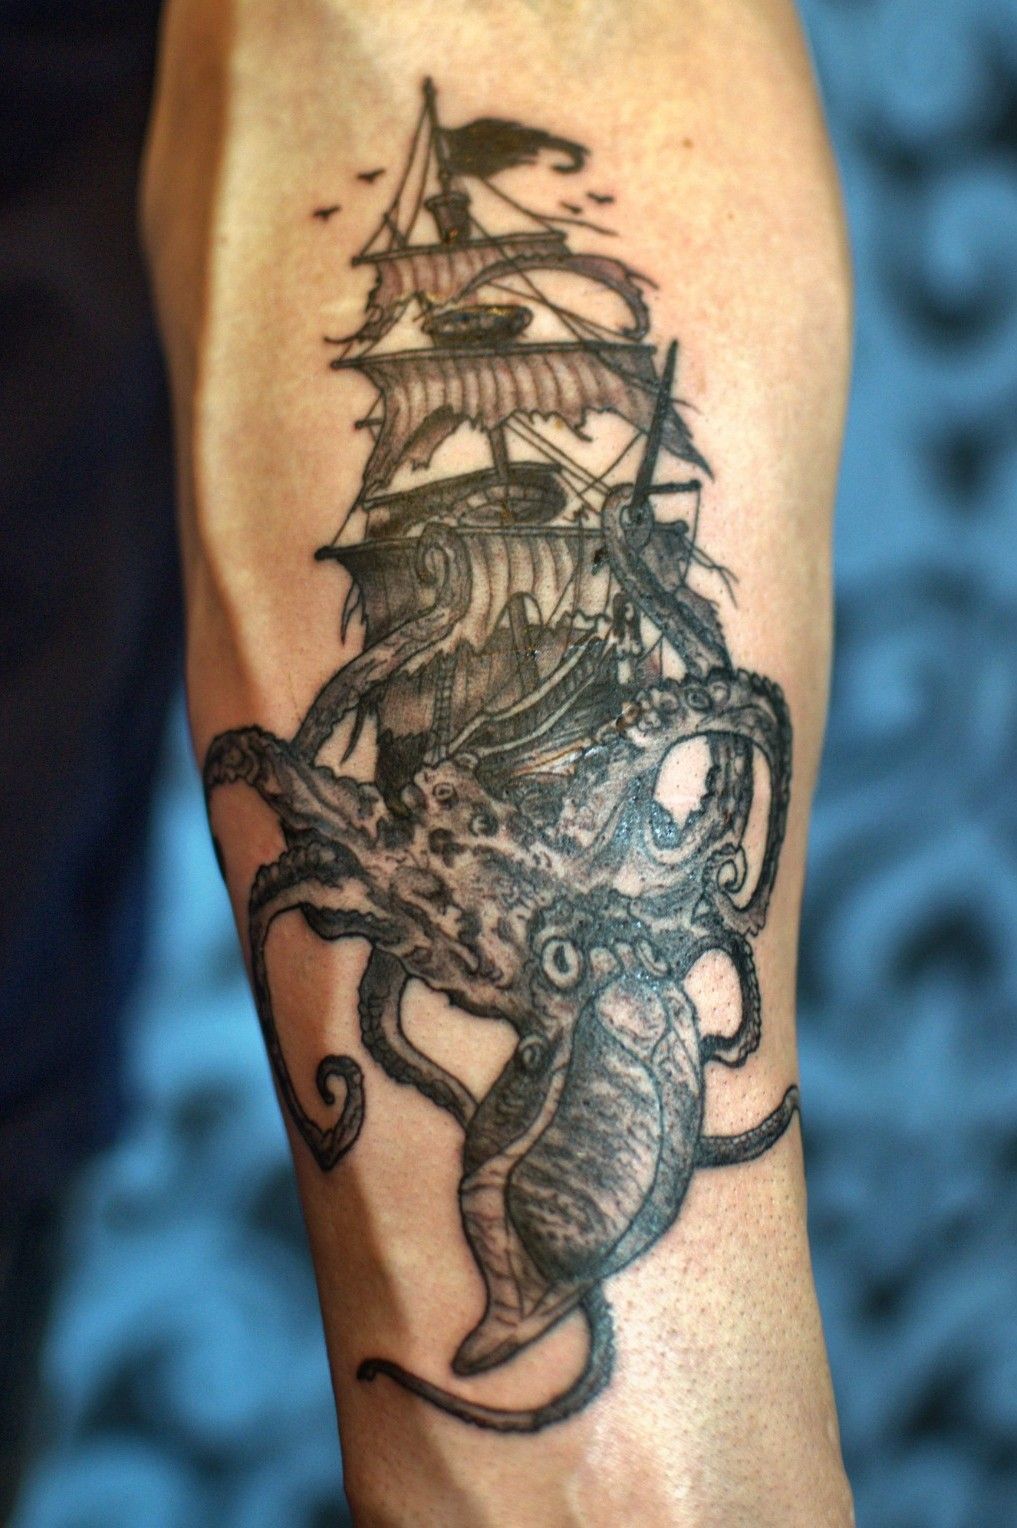 Kraken half sleeve tattoo 1stsitting by danktat on DeviantArt